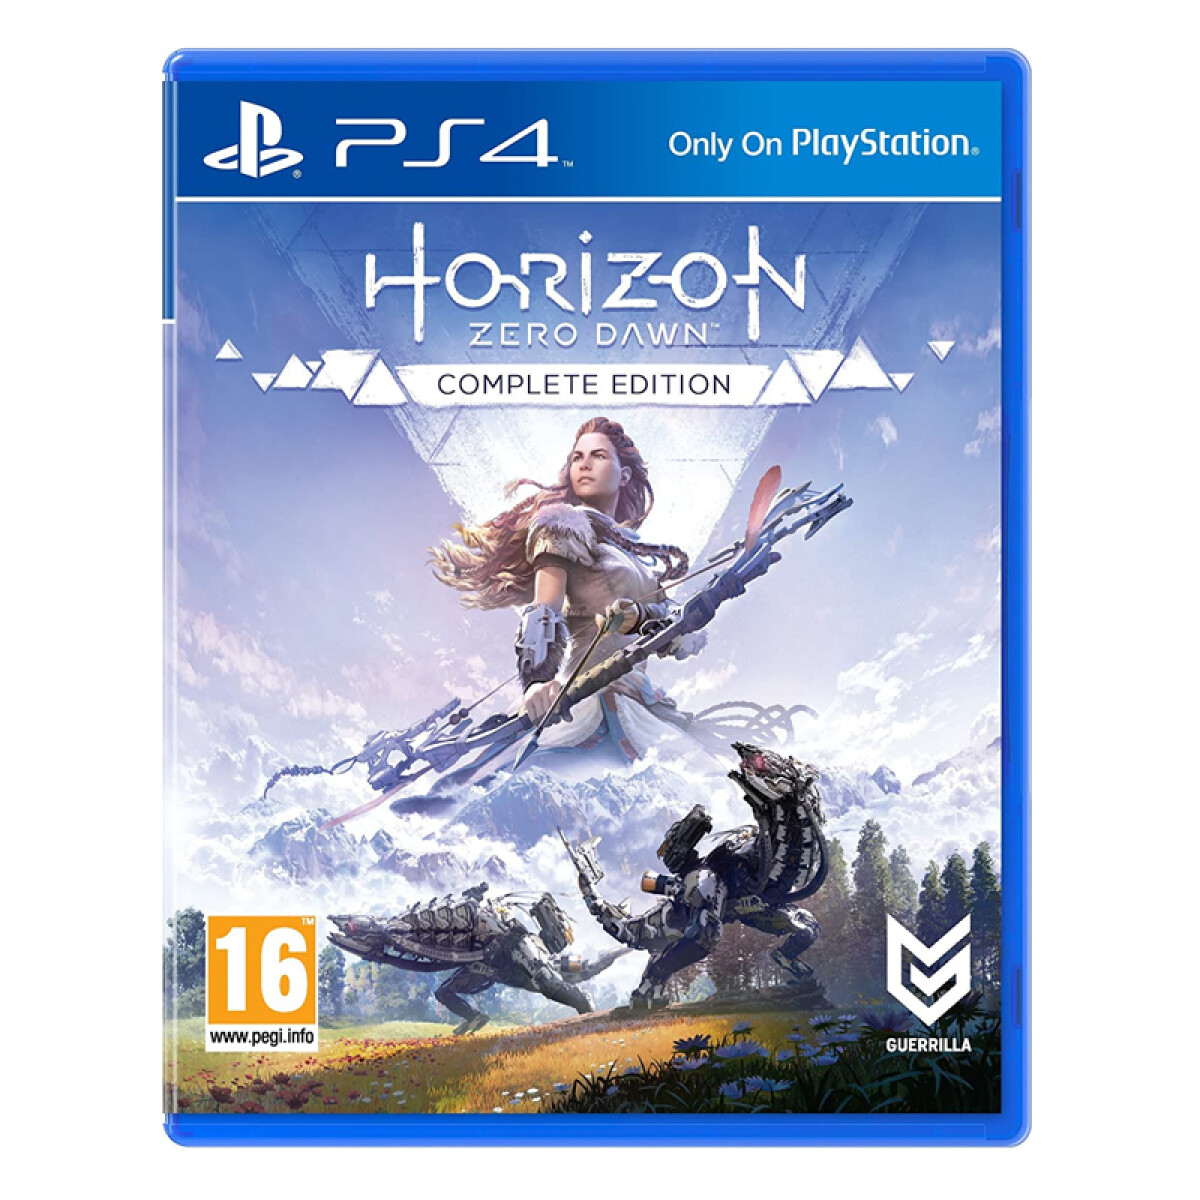 Juego Para PS4 Horizon Zero Dawn Edicion Completa - Unica 